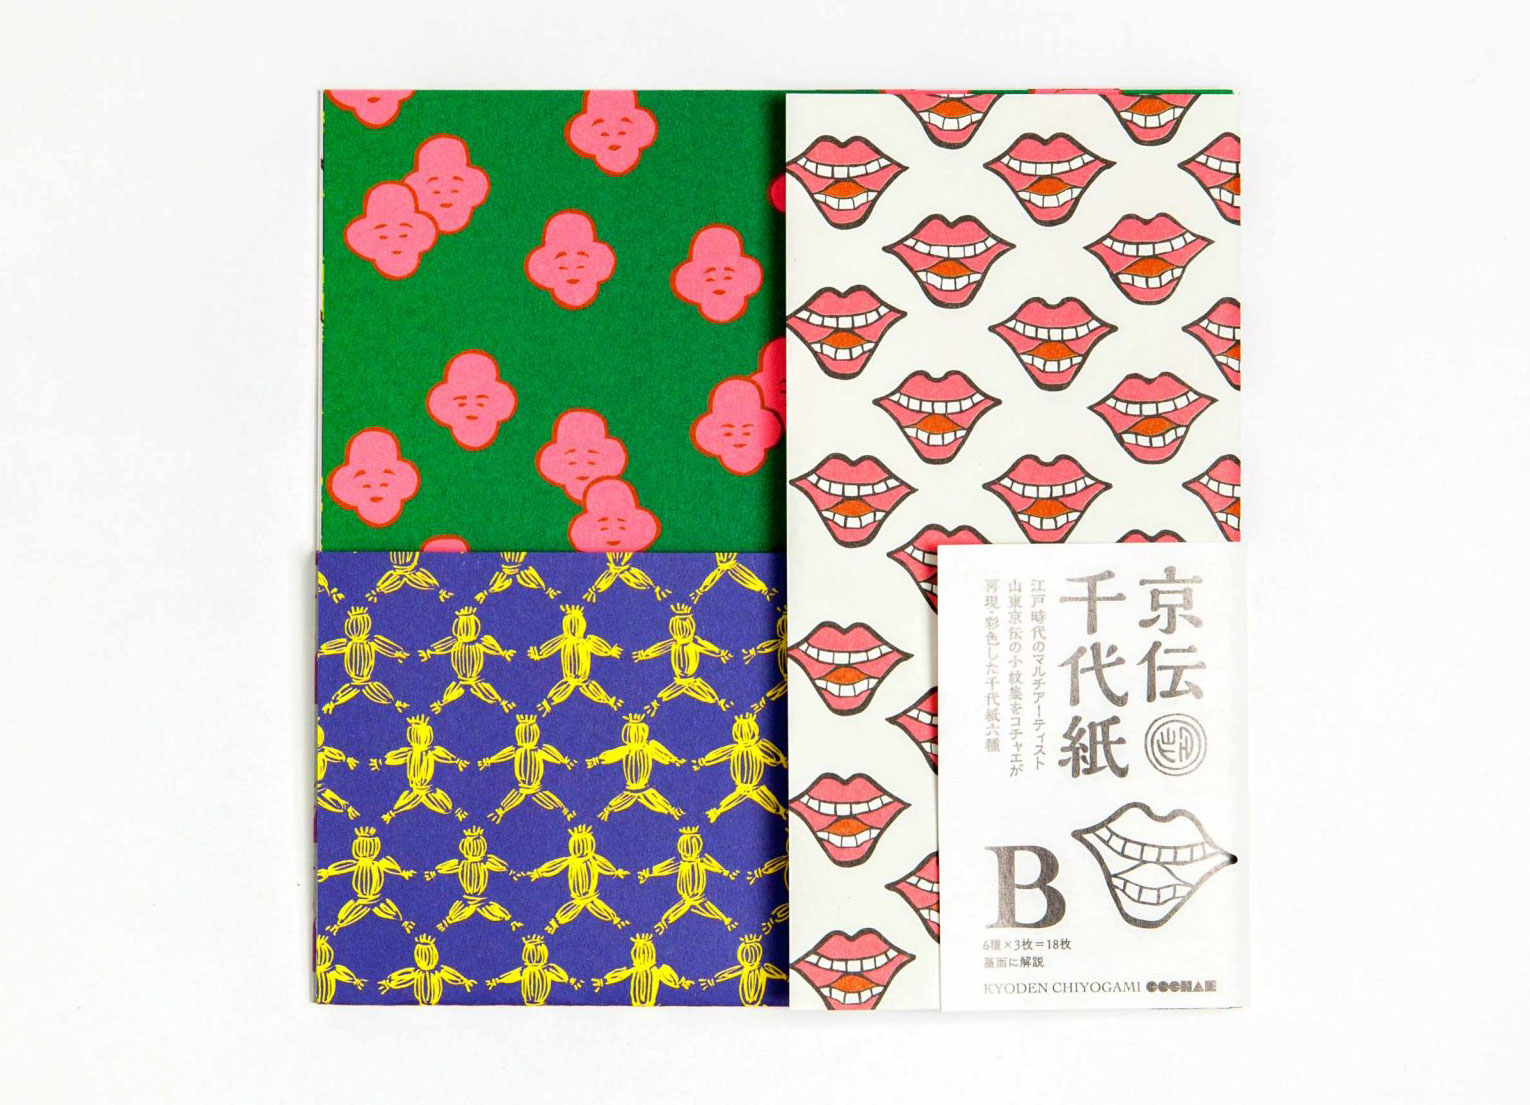 北斎×COCHAE×アダチ版画 カラフルな木版摺封筒で伝統の技に触れる